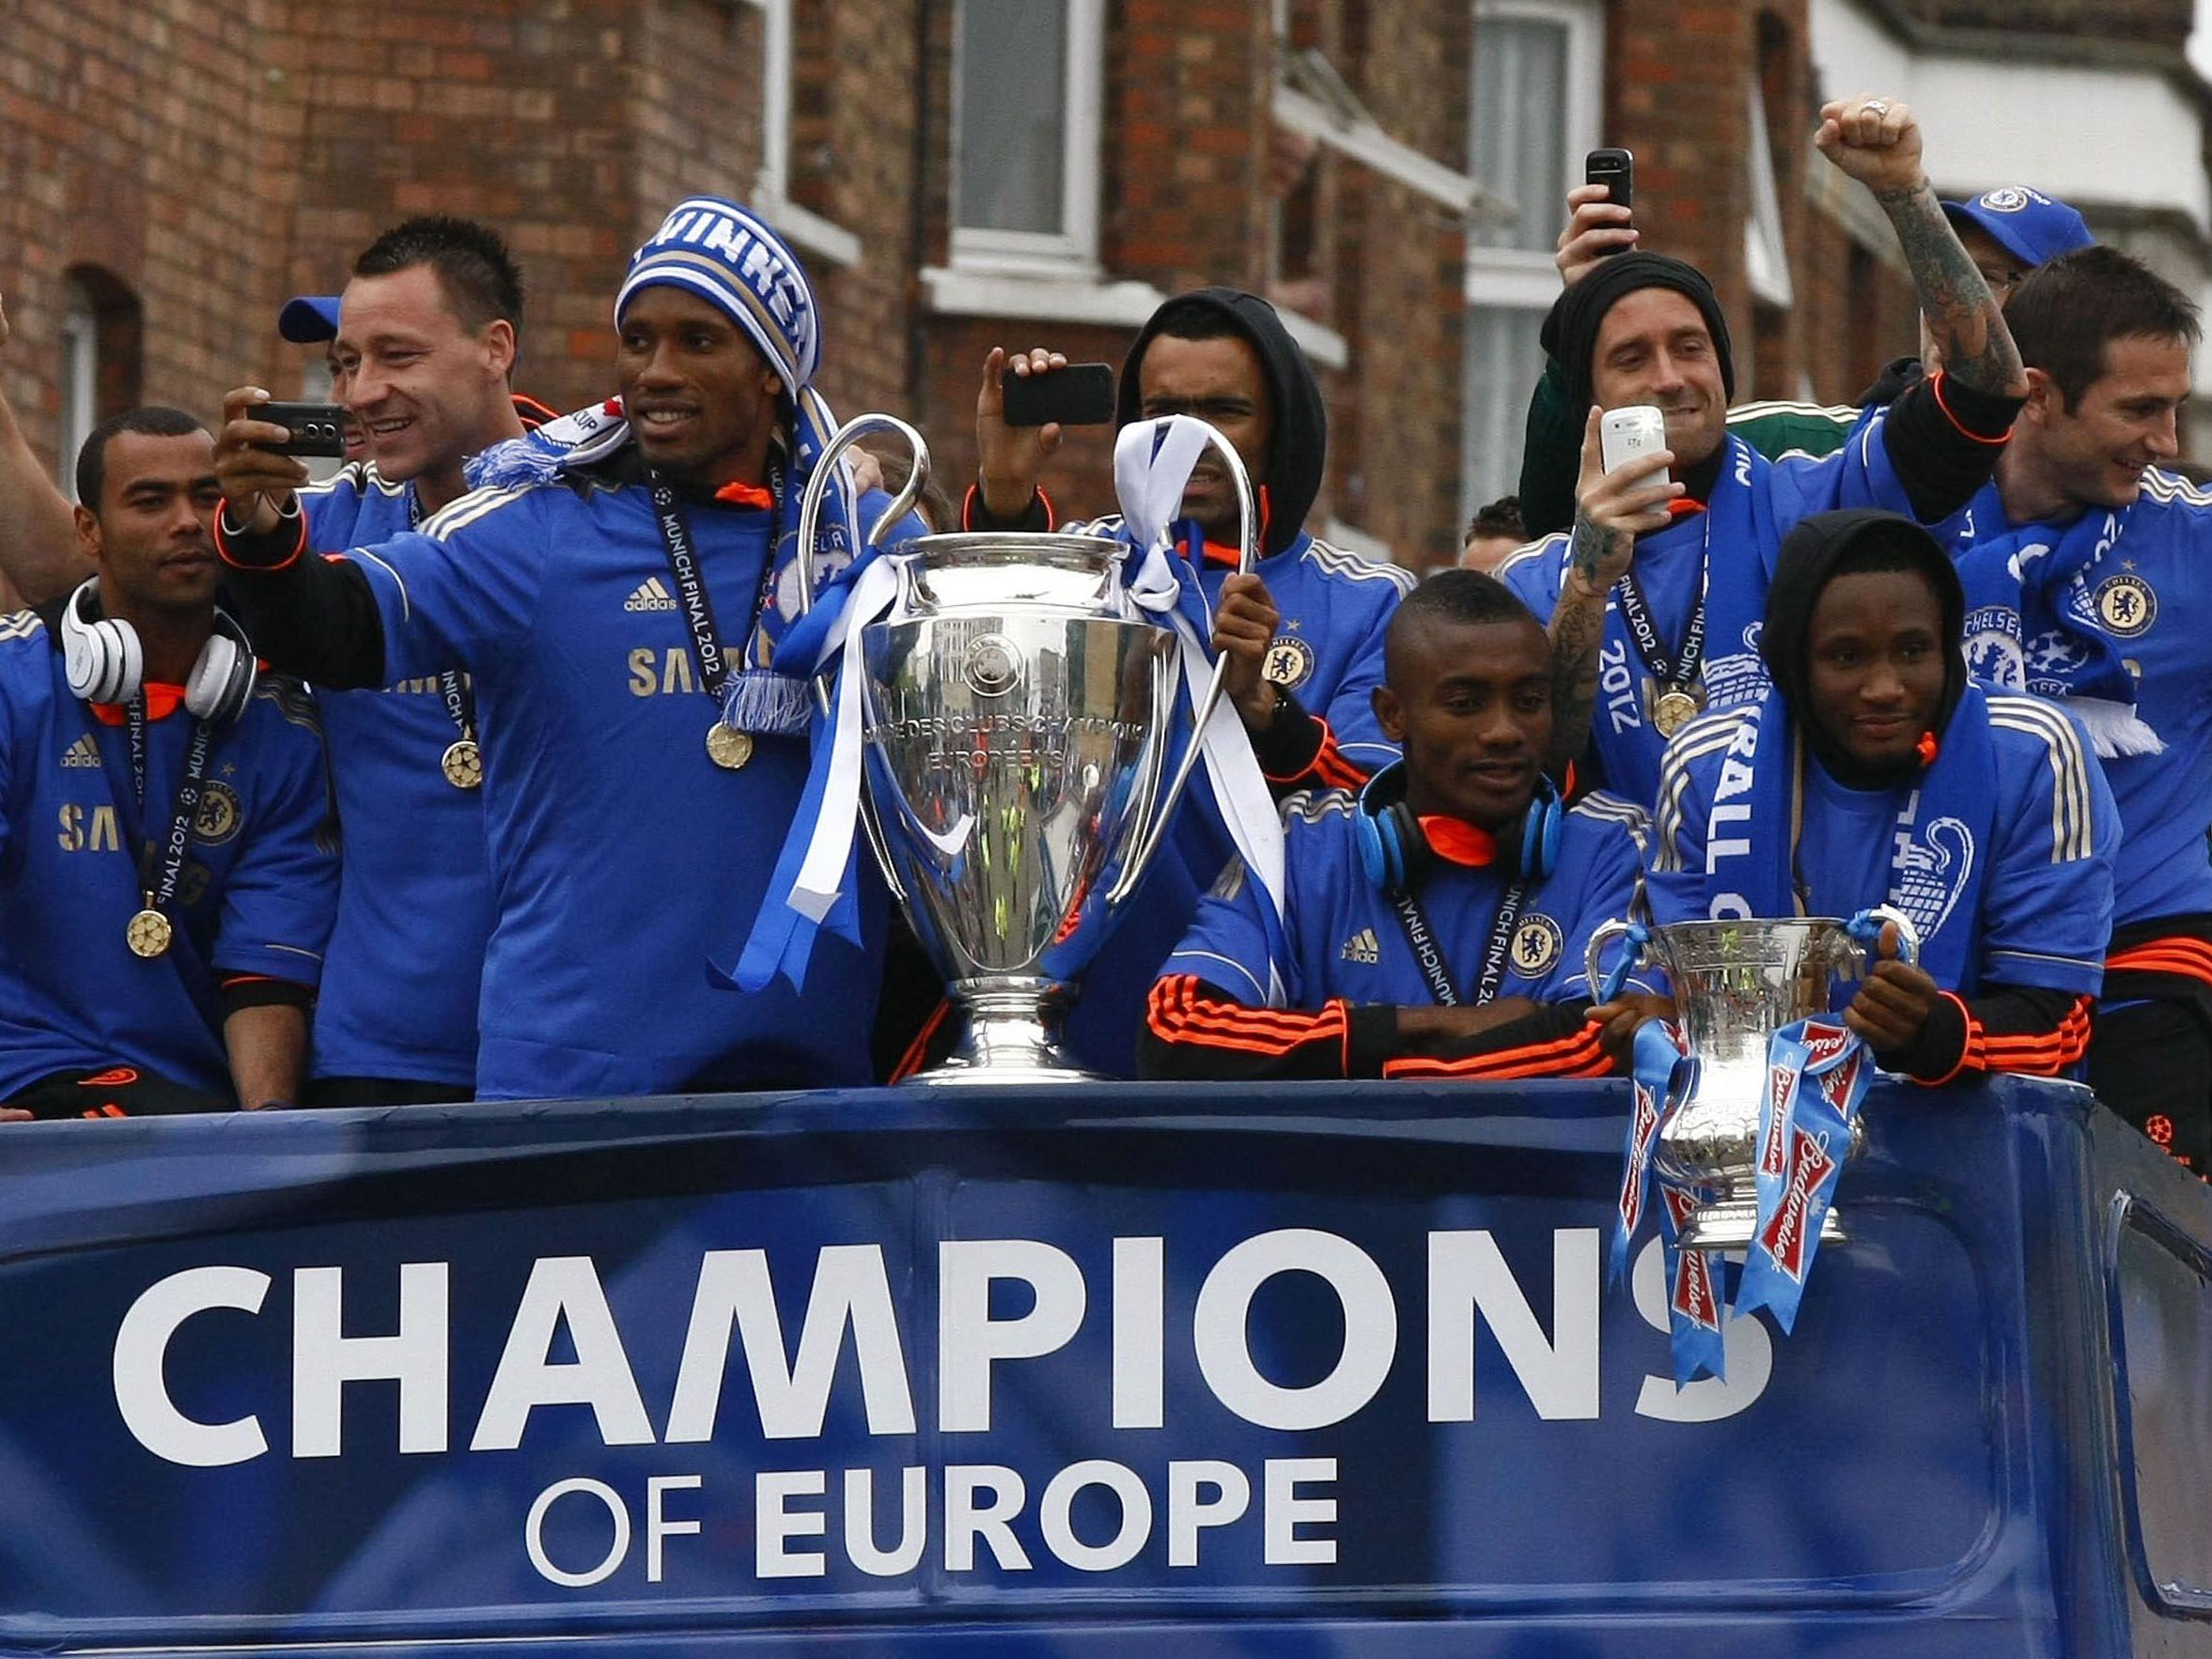 Die Chelsea-Spieler konnten sich von zehntausenden Fans feiern lassen.